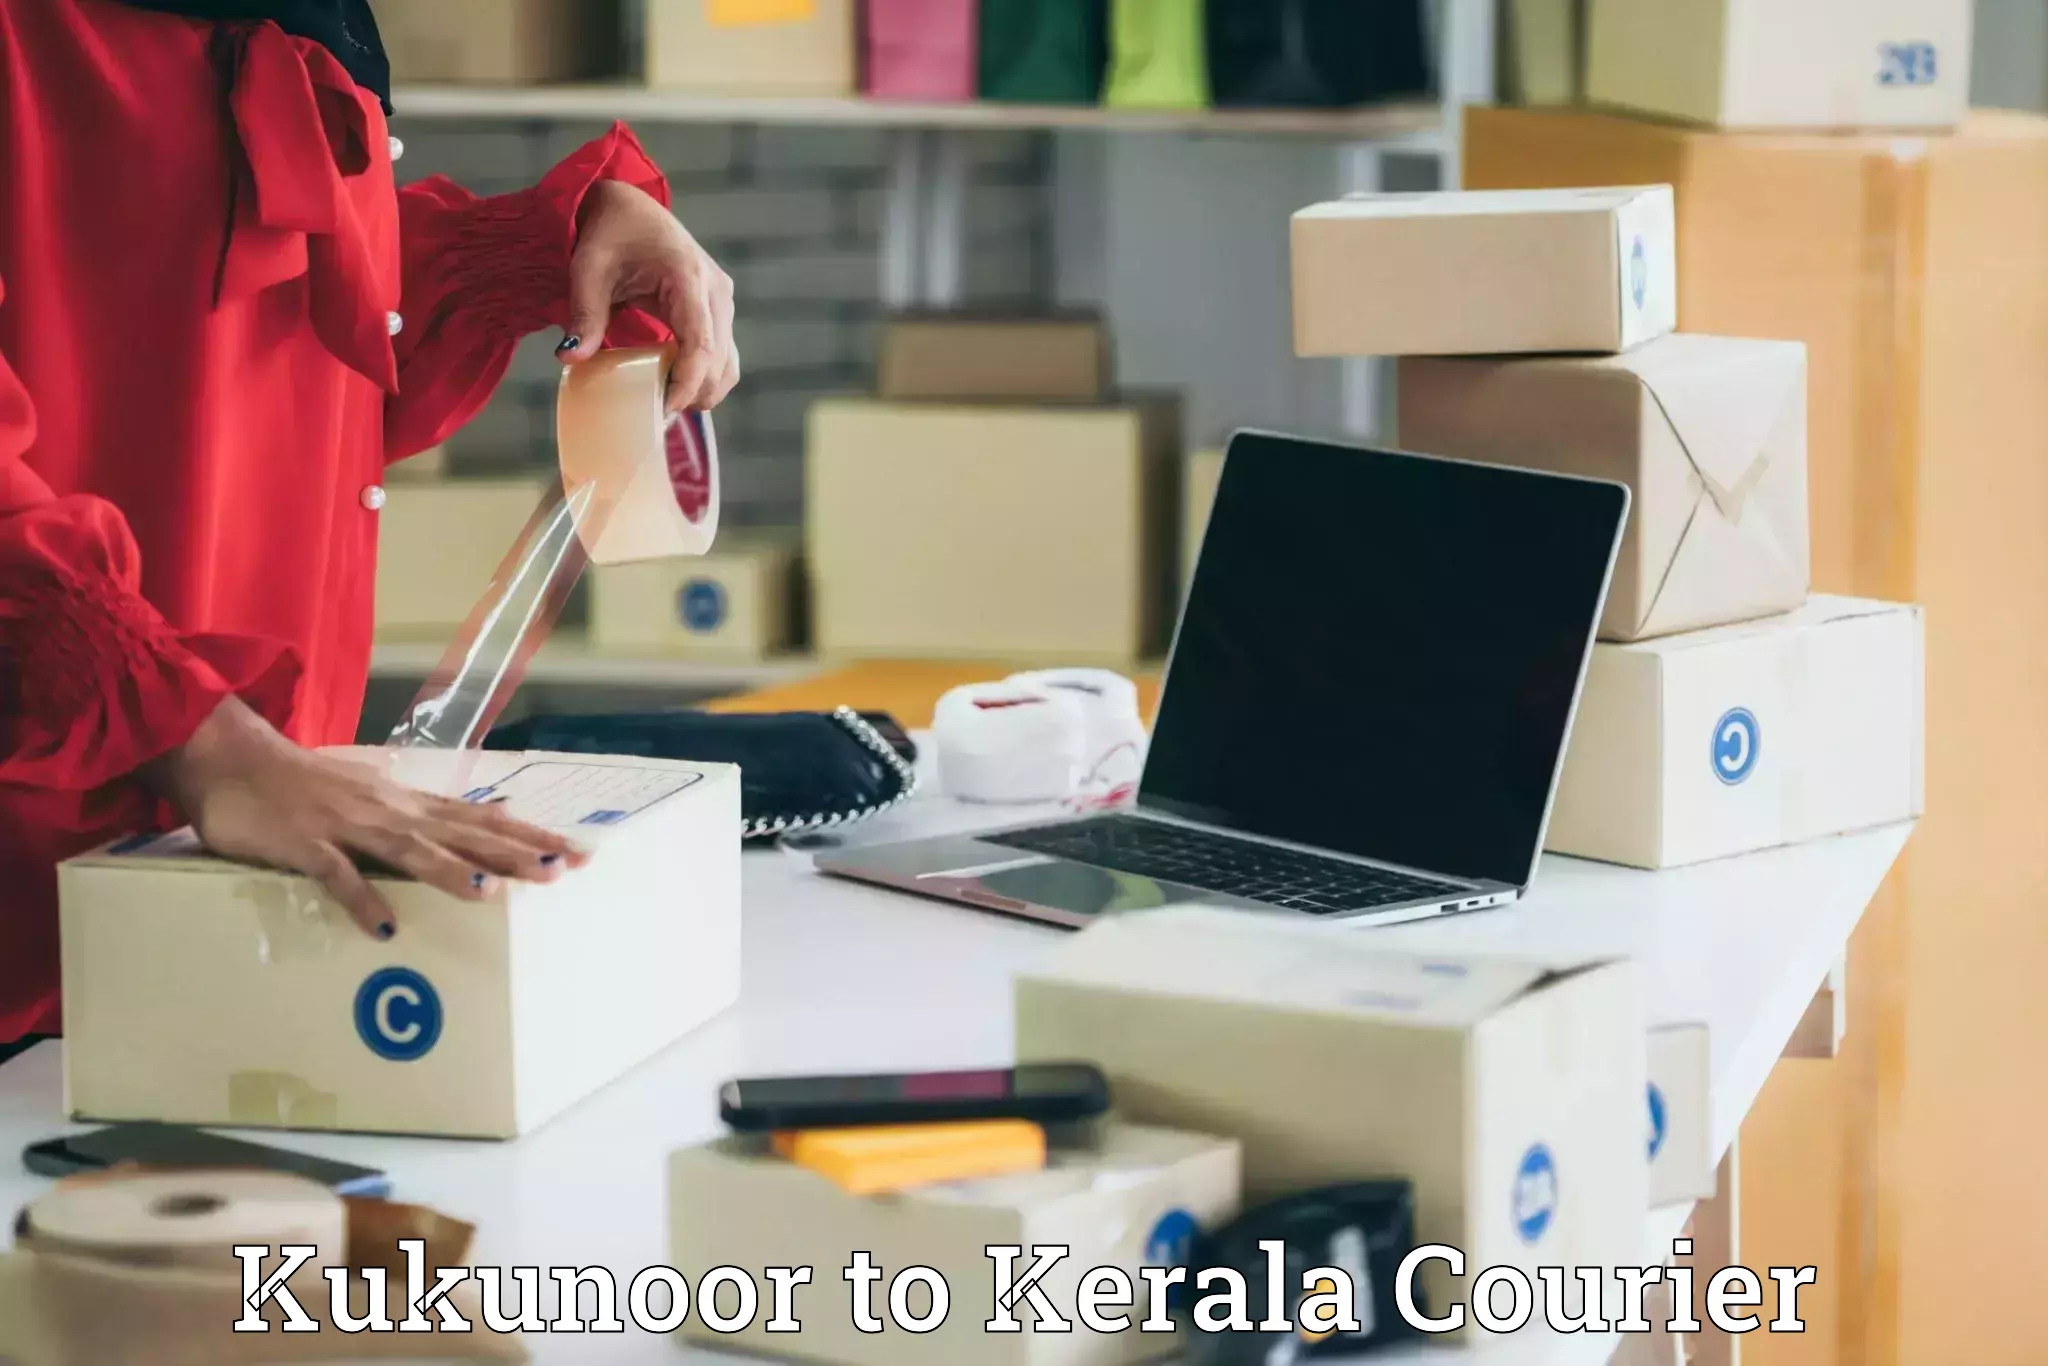 Express delivery network Kukunoor to Kerala